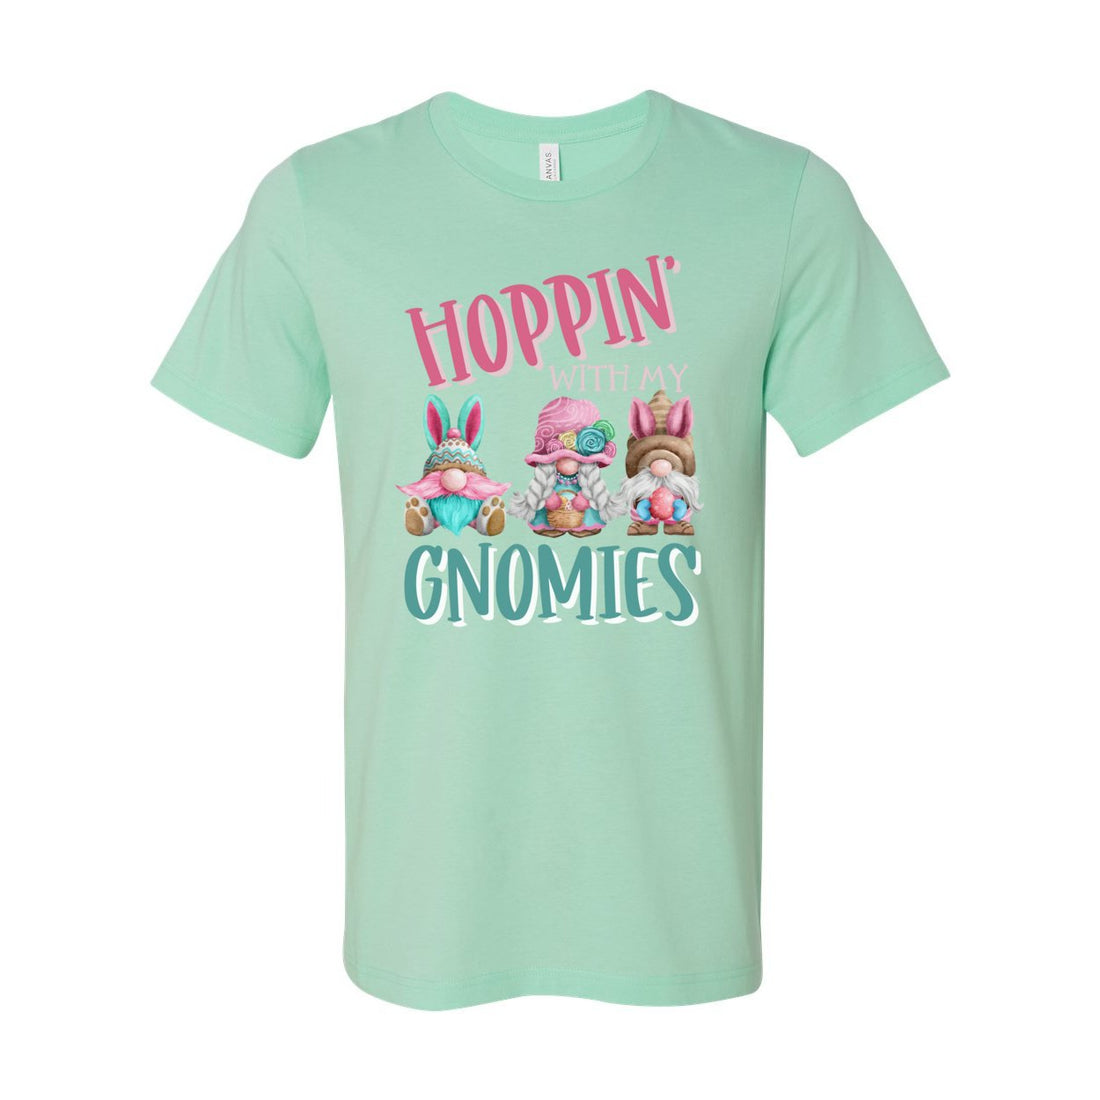 Hoppin' Gnomies Tee - T-Shirts - Positively Sassy - Hoppin' Gnomies Tee